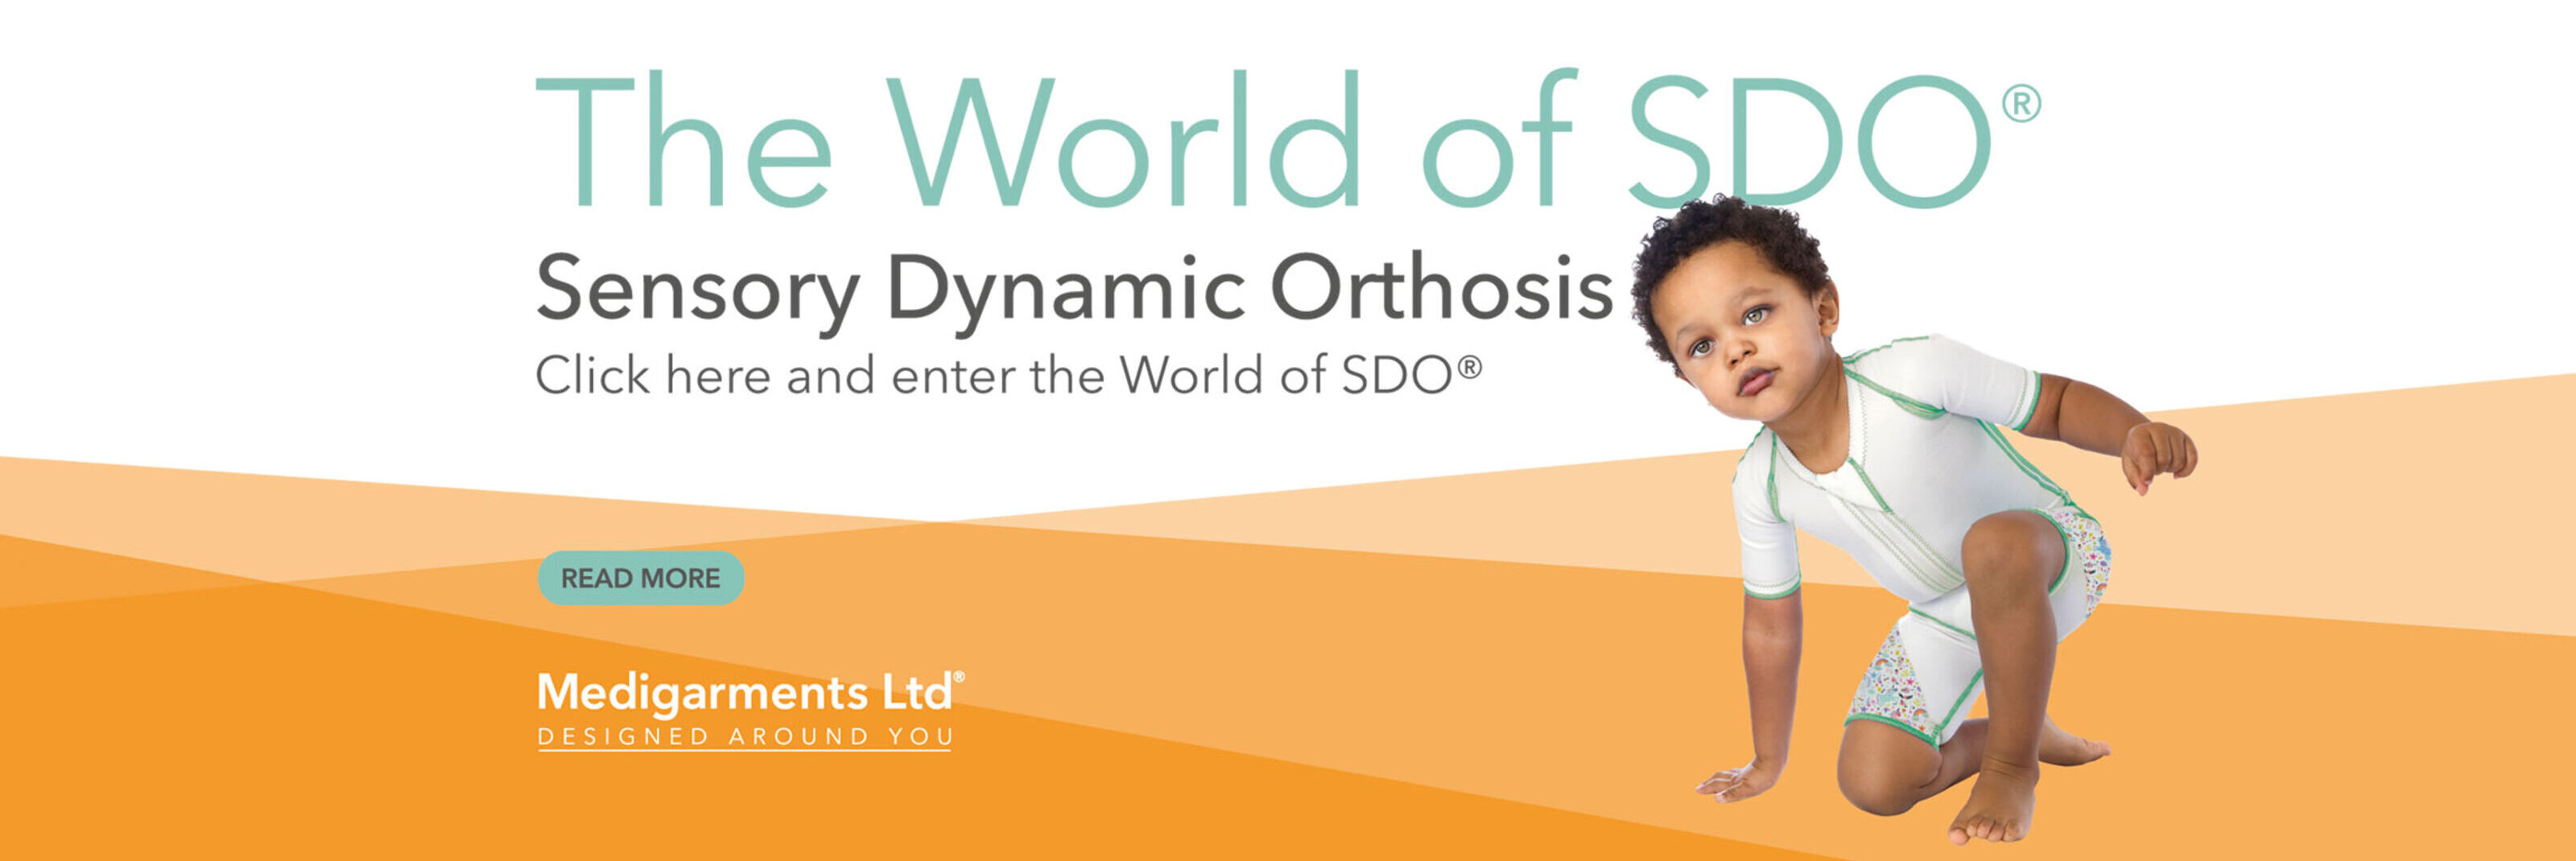 The world of SDO banner